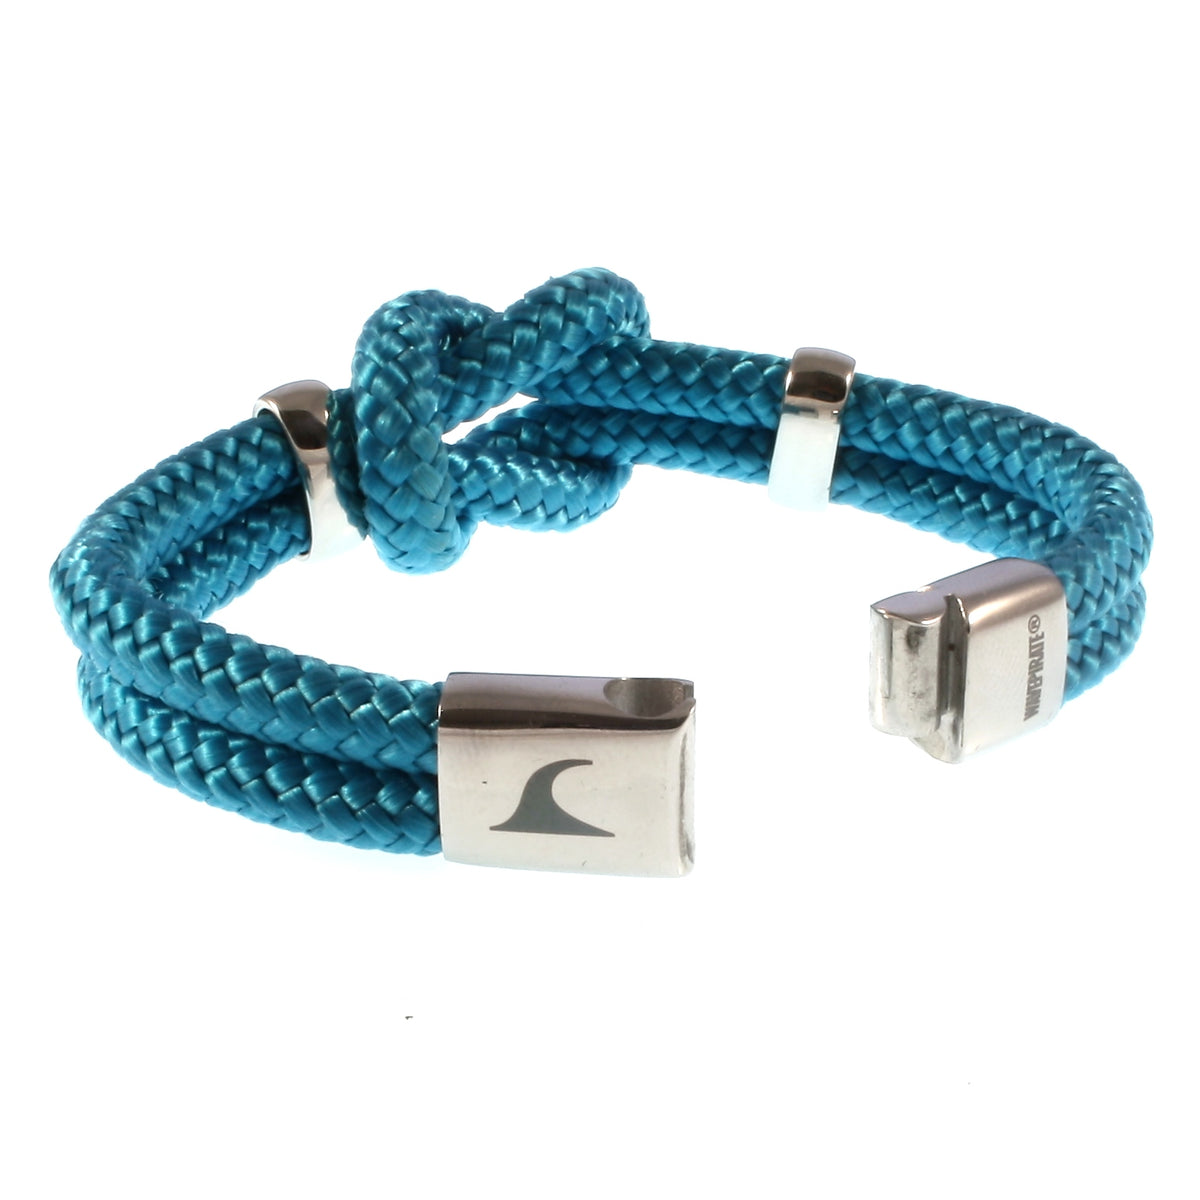 Damen-Segeltau-armband-pure-blau-silber-geflochten-Edelstahlverschluss-offen-wavepirate-shop-st